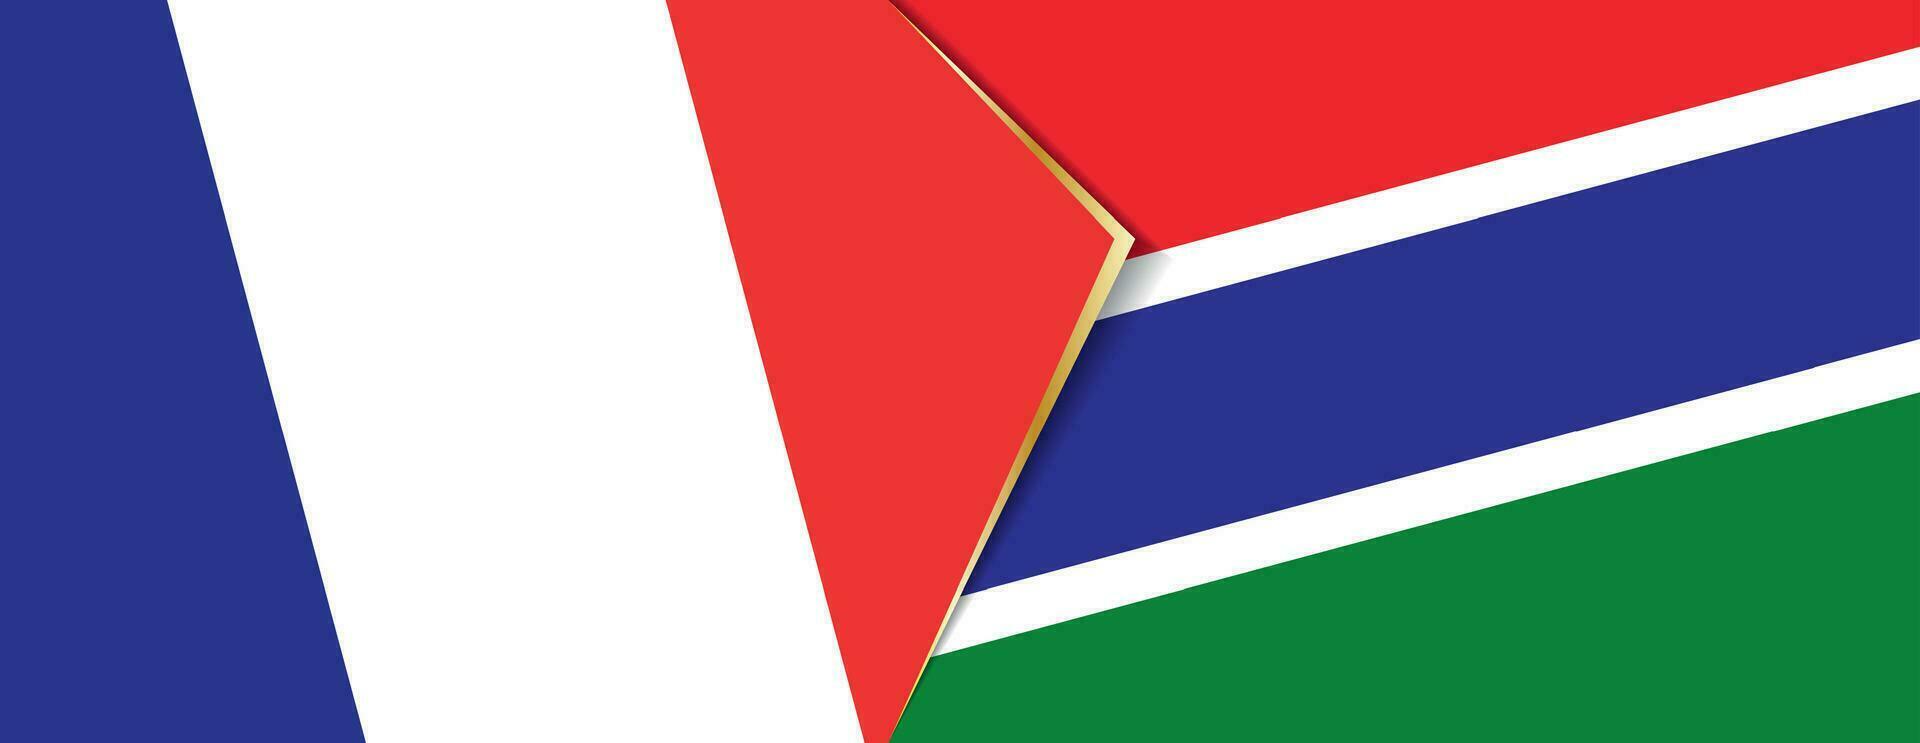 Francia y Gambia banderas, dos vector banderas